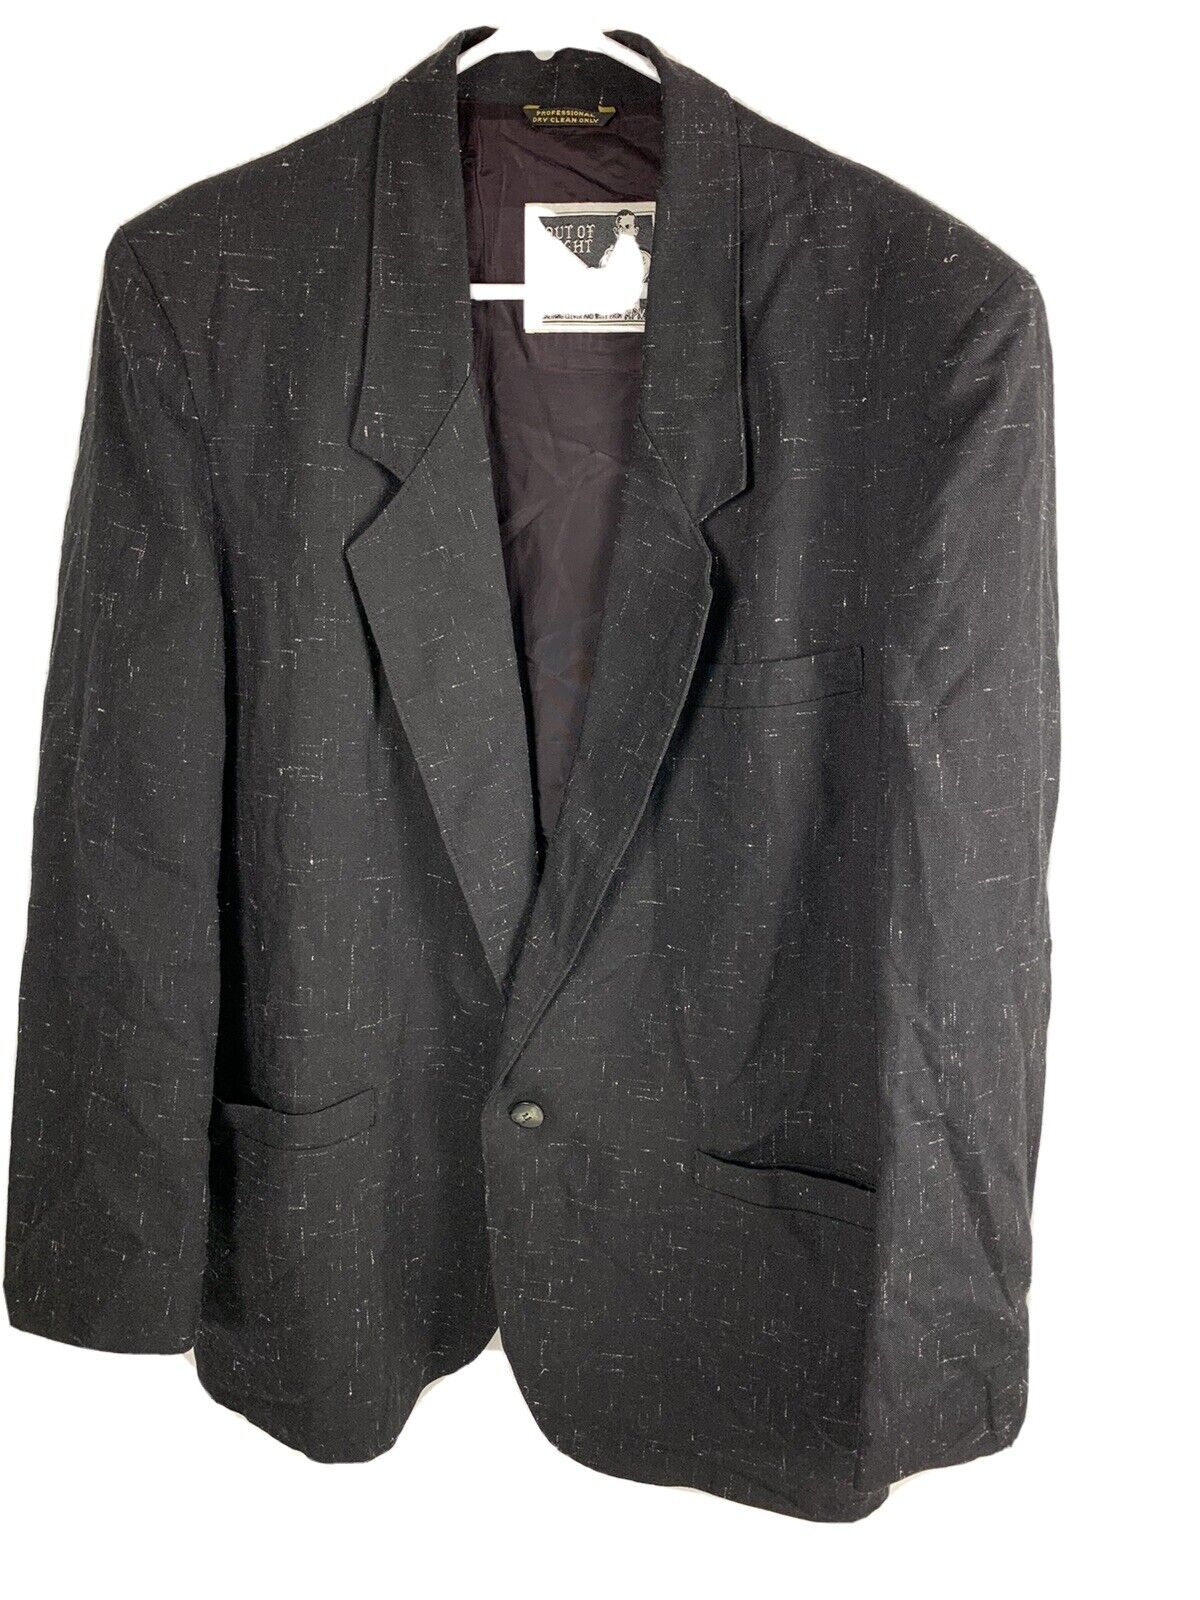 Mens Size Medium Jacket Blazer Coat Out of Sight … - image 1